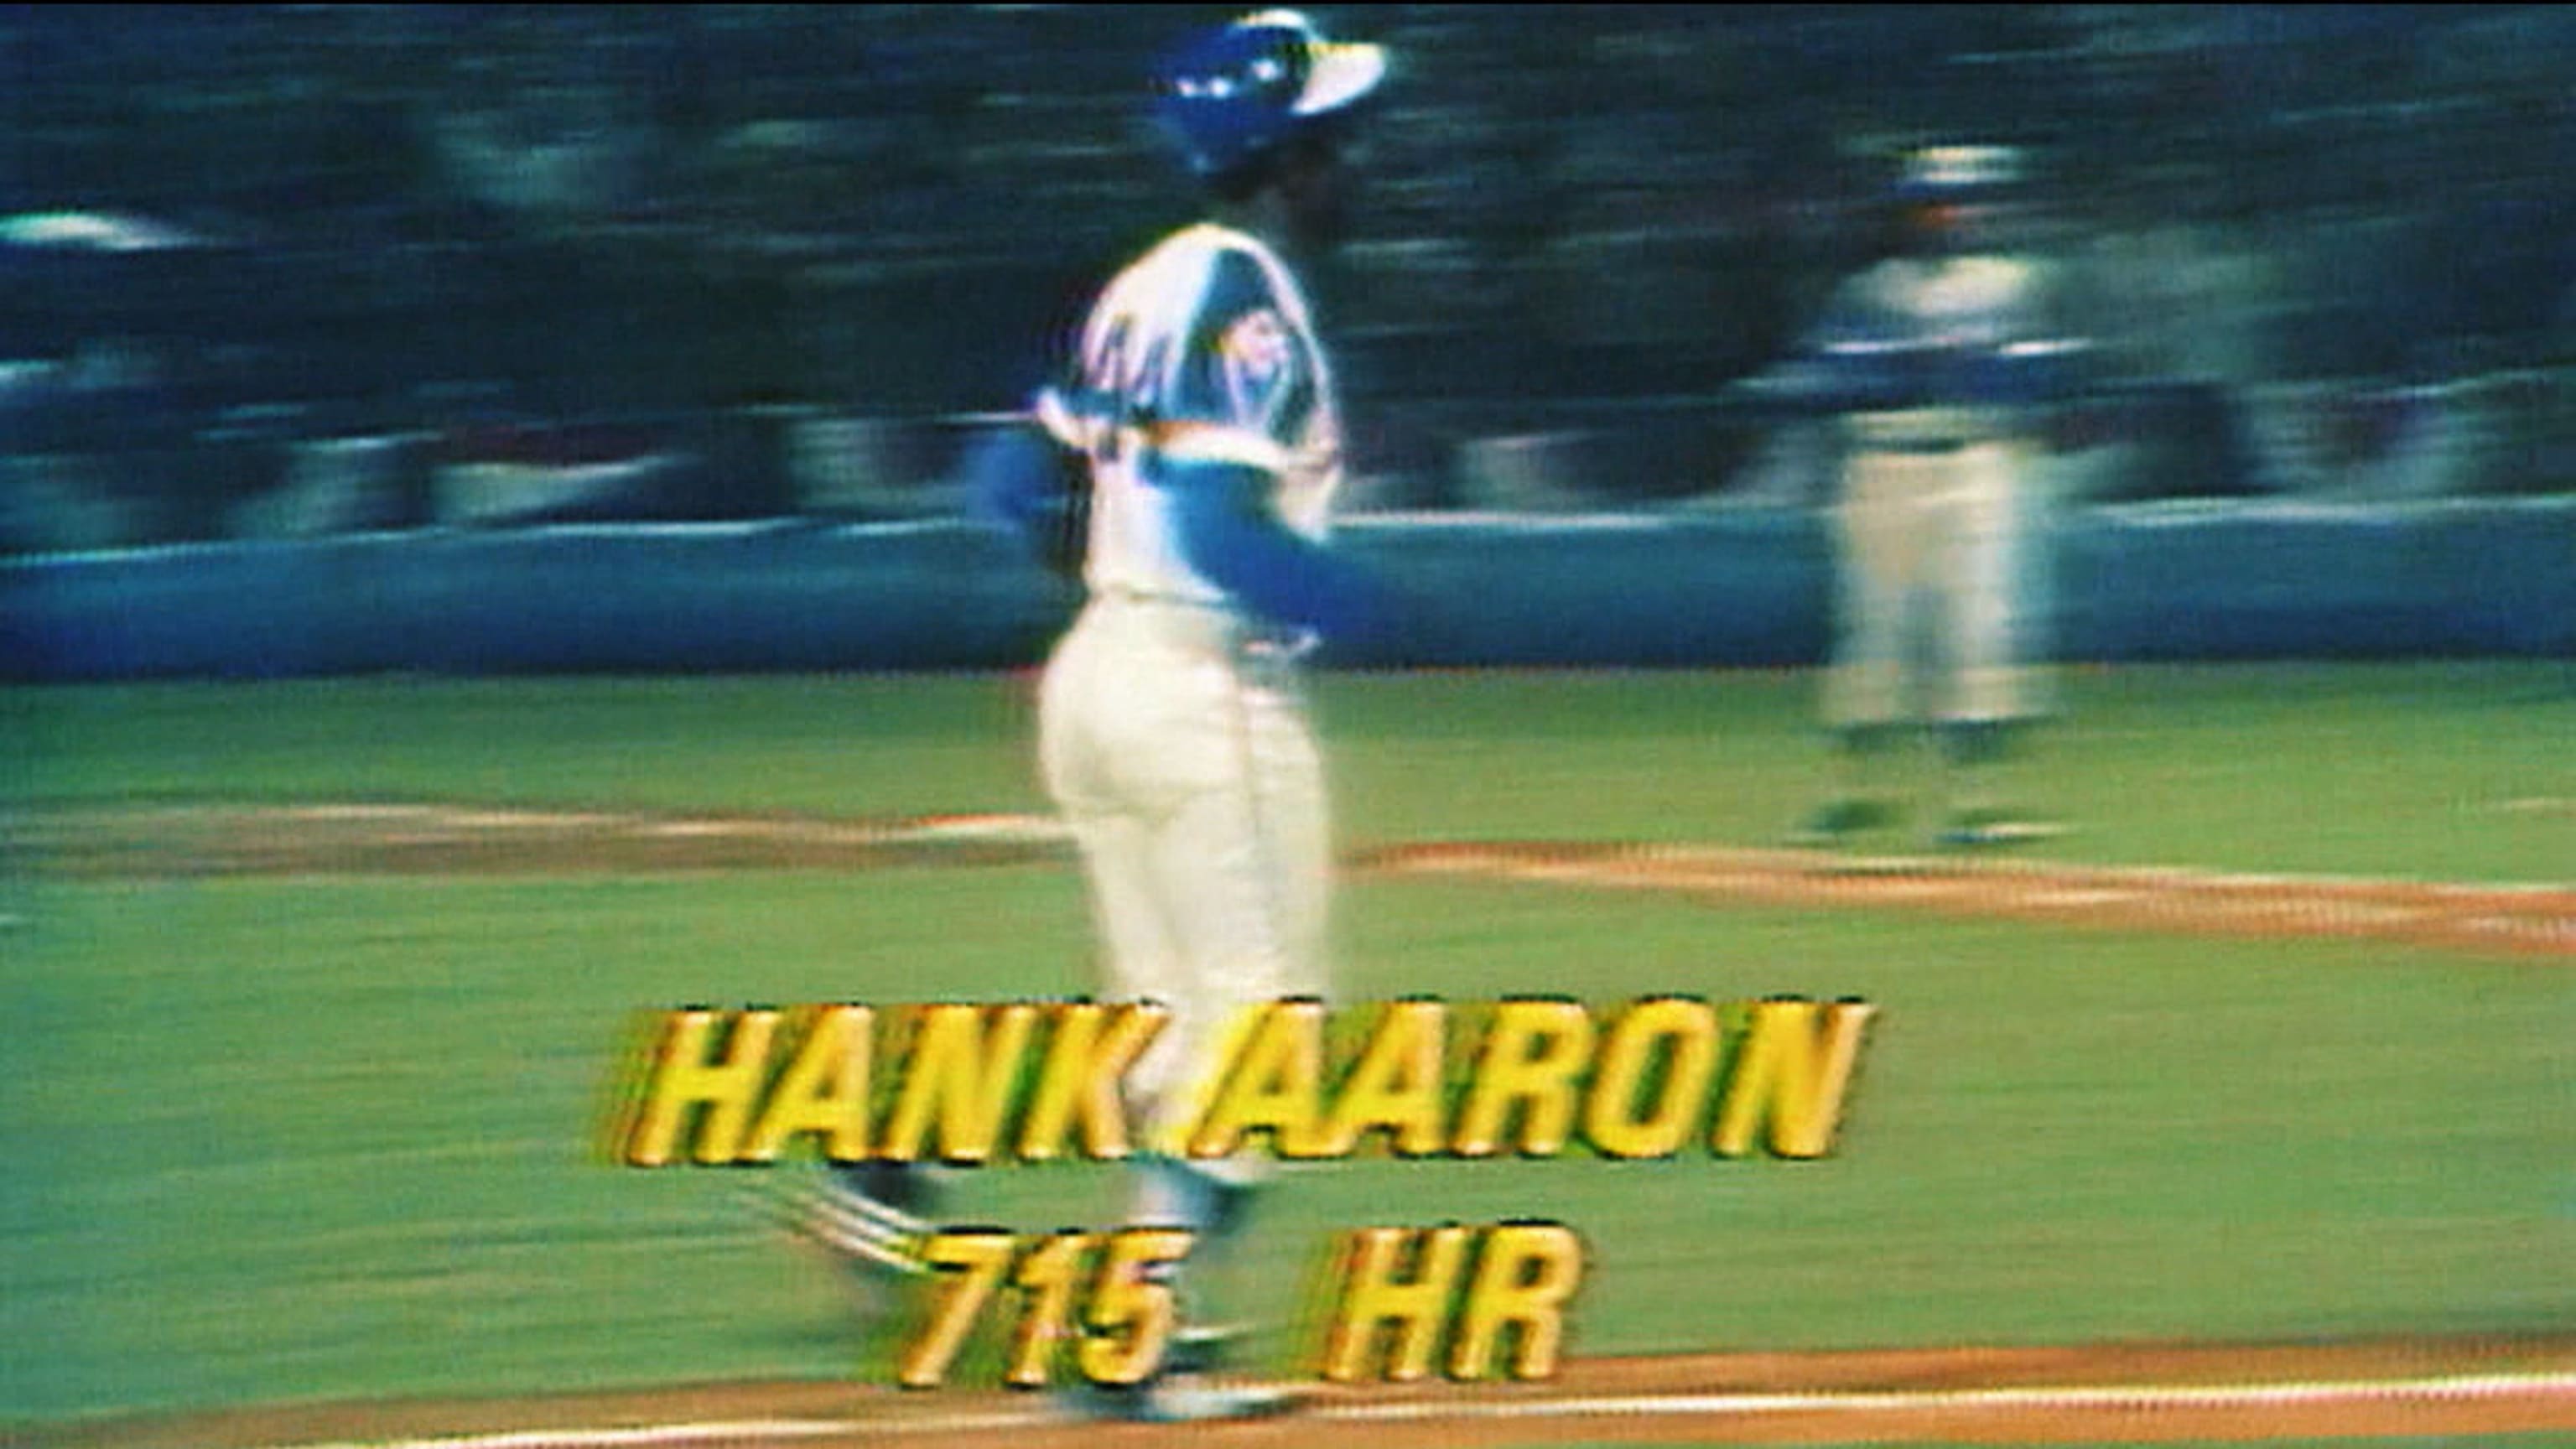 Hank Aaron says Jason Heyward can help baseball – The Oakland Press